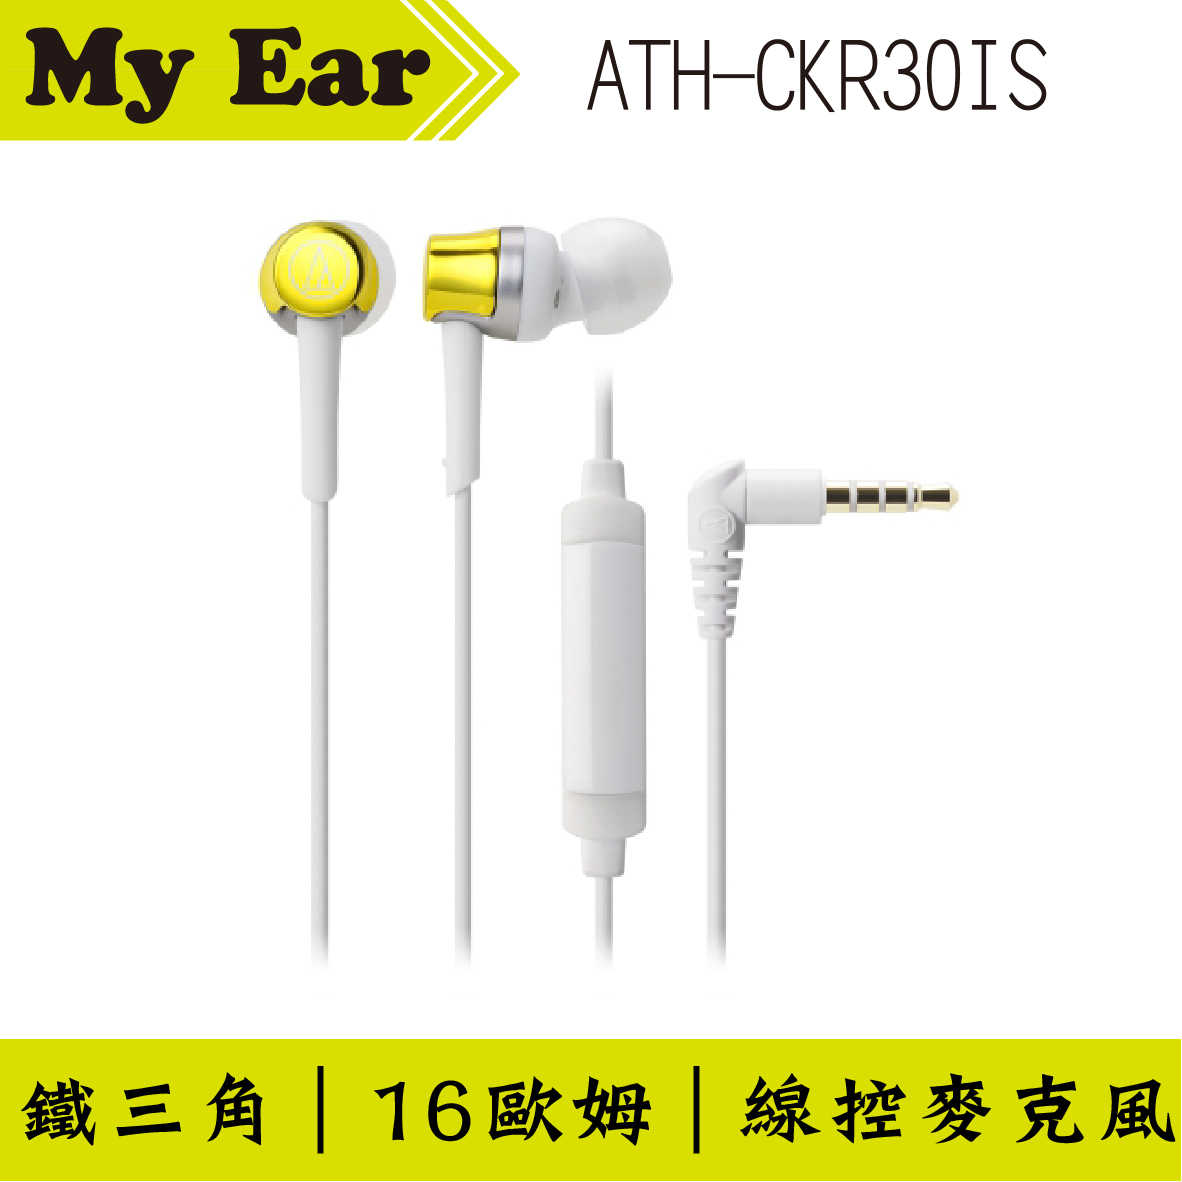 鐵三角 ATH-CKR30is 黃色 線控耳道式耳機 | My Ear 耳機專門店